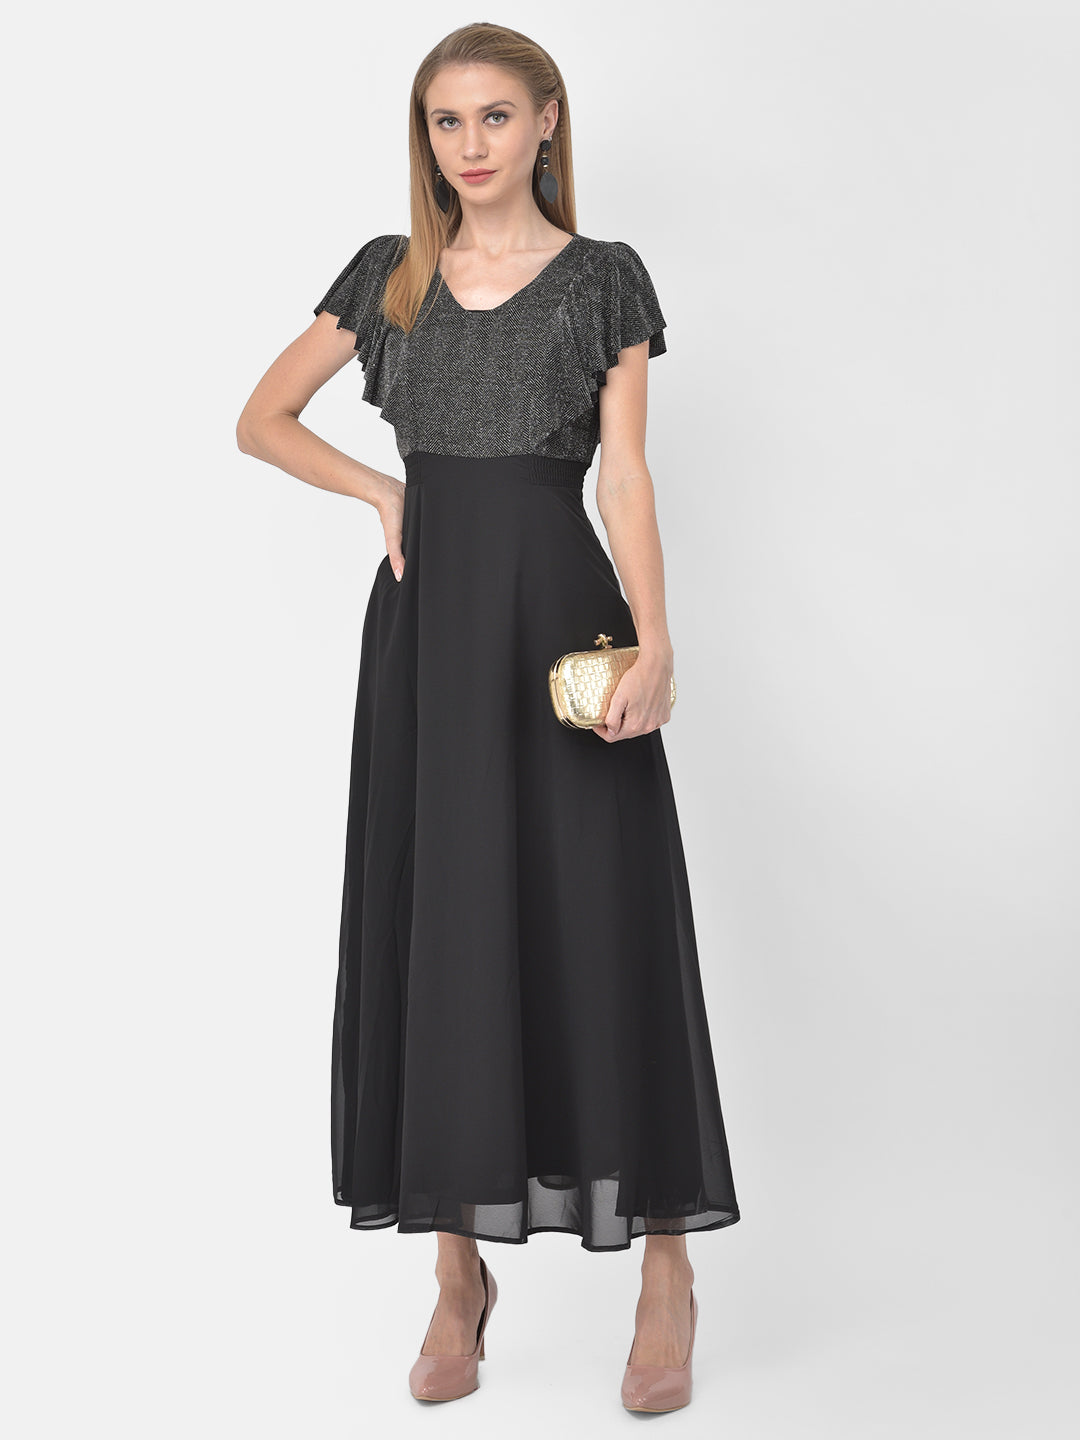 Black Cap Sleeve Maxi Solid Dress